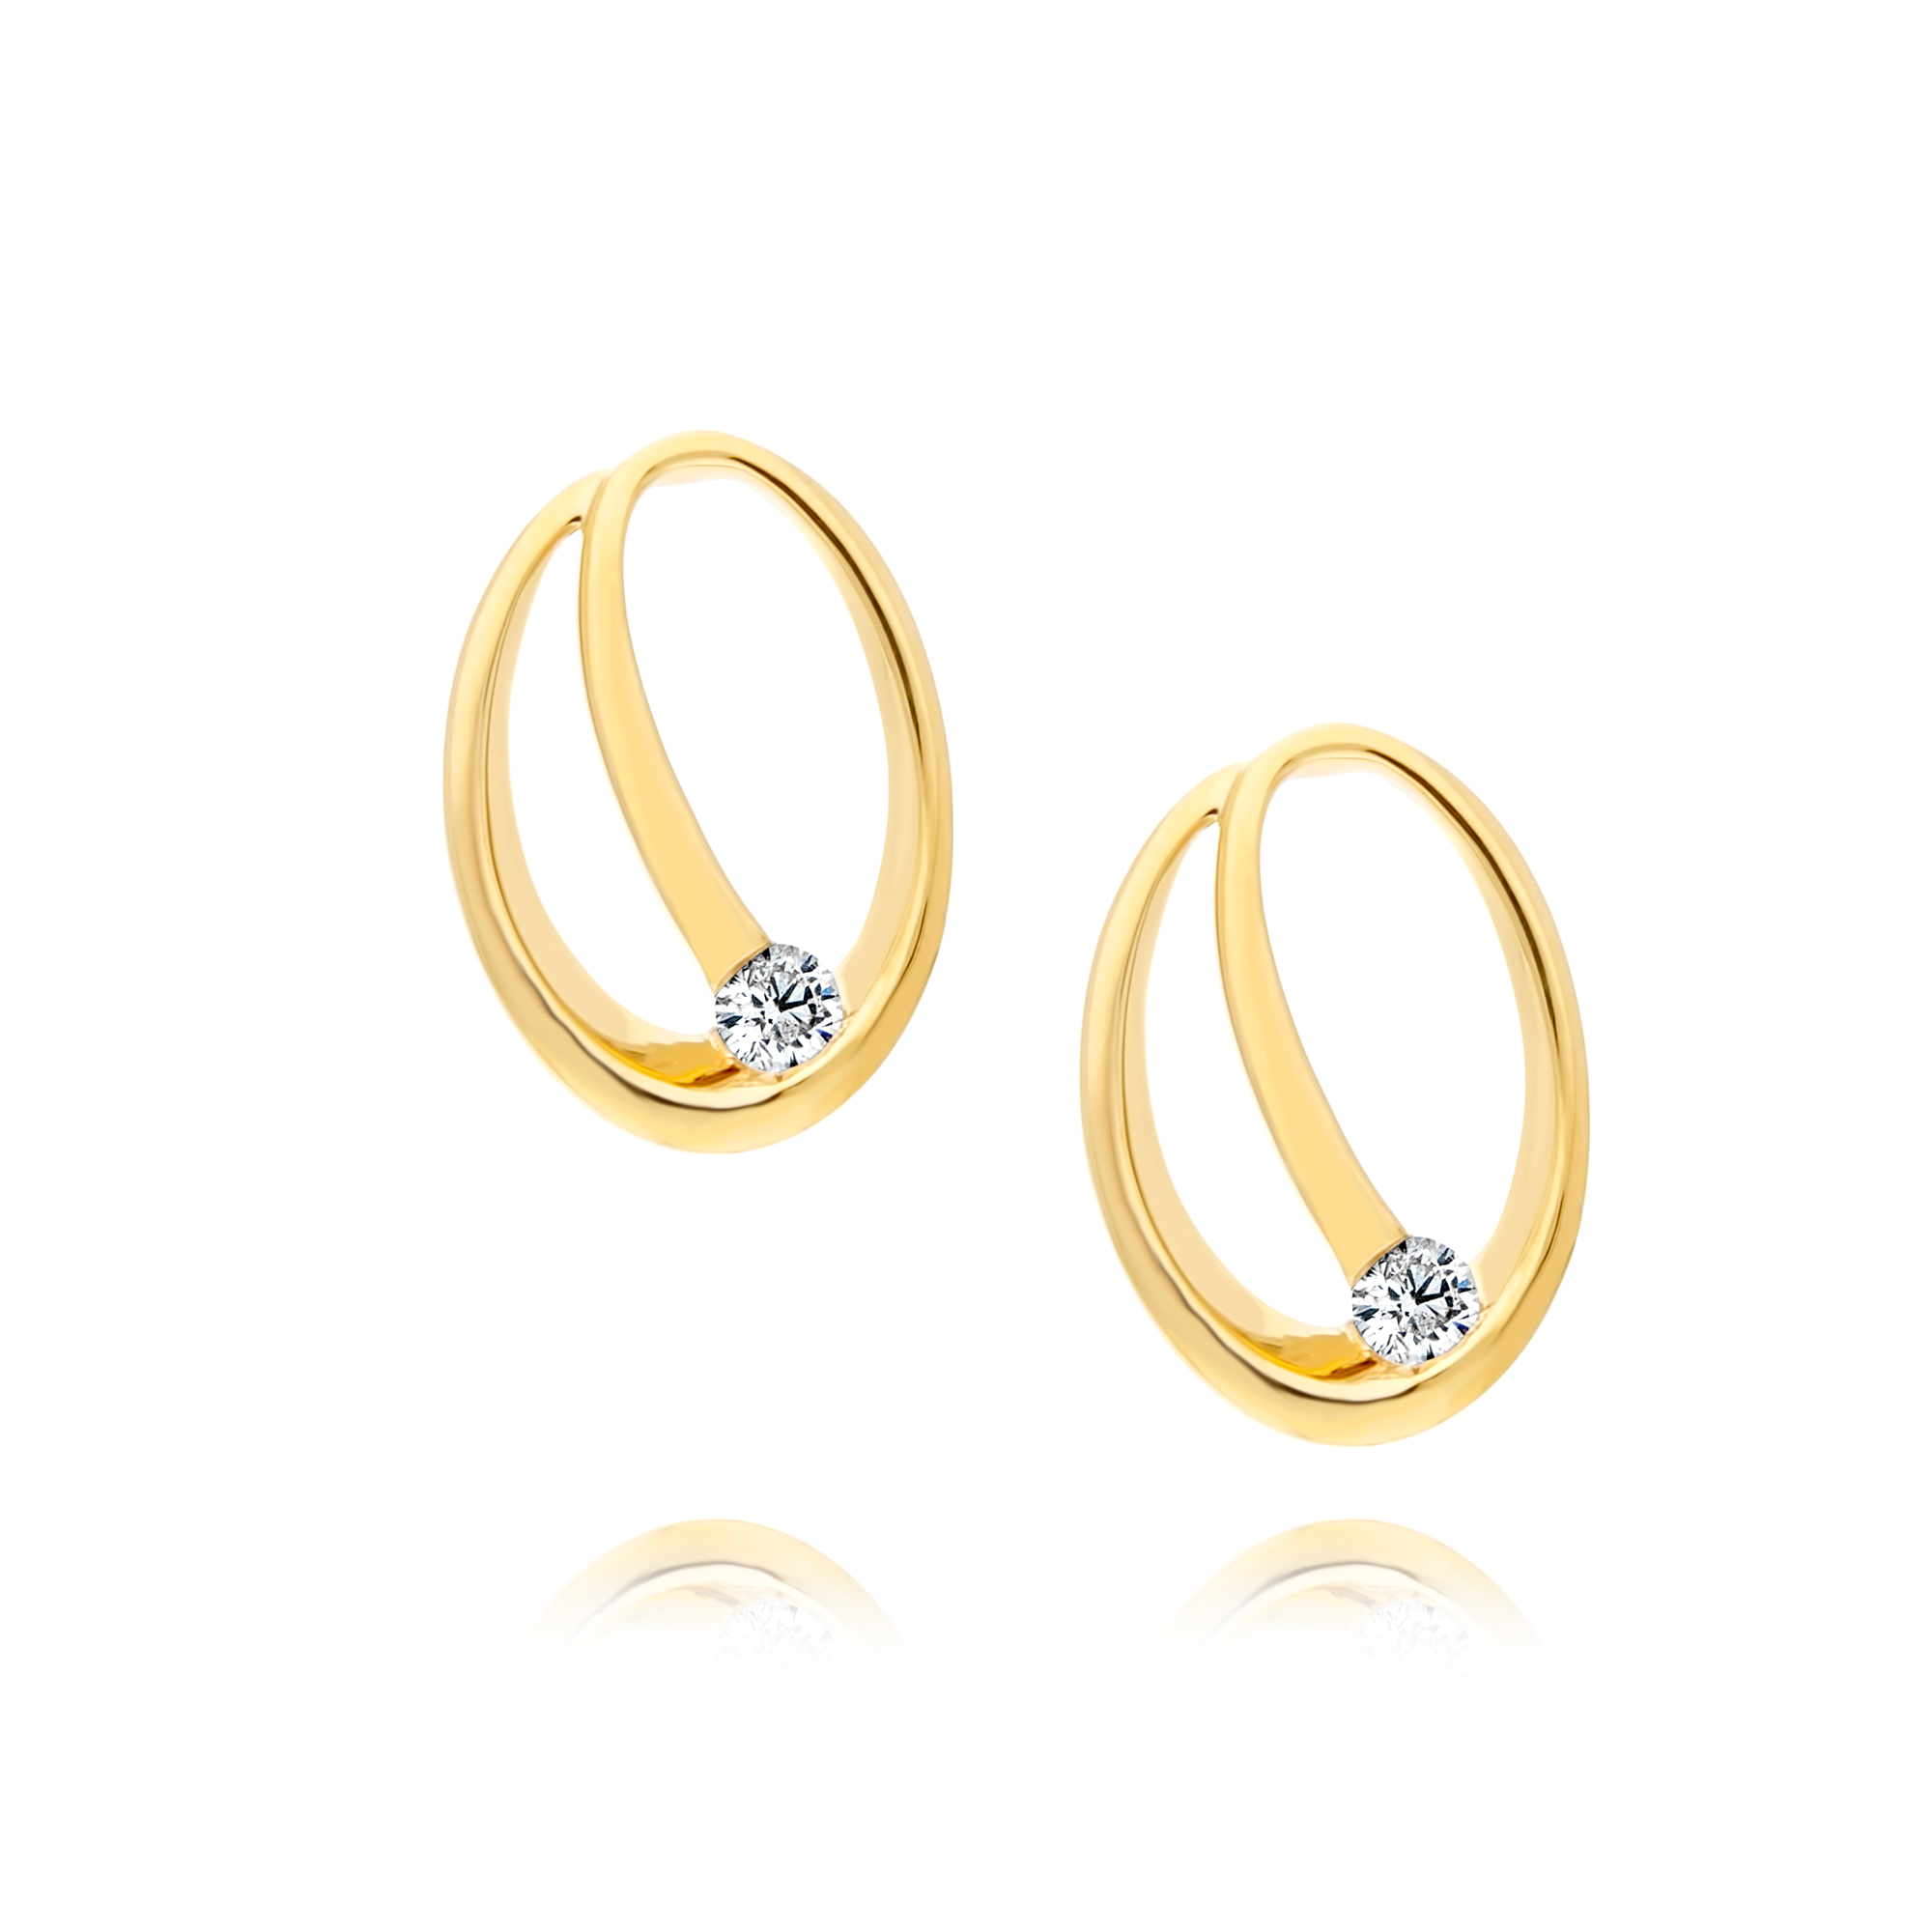 Yellow Gold Circular Earrings with Diamond